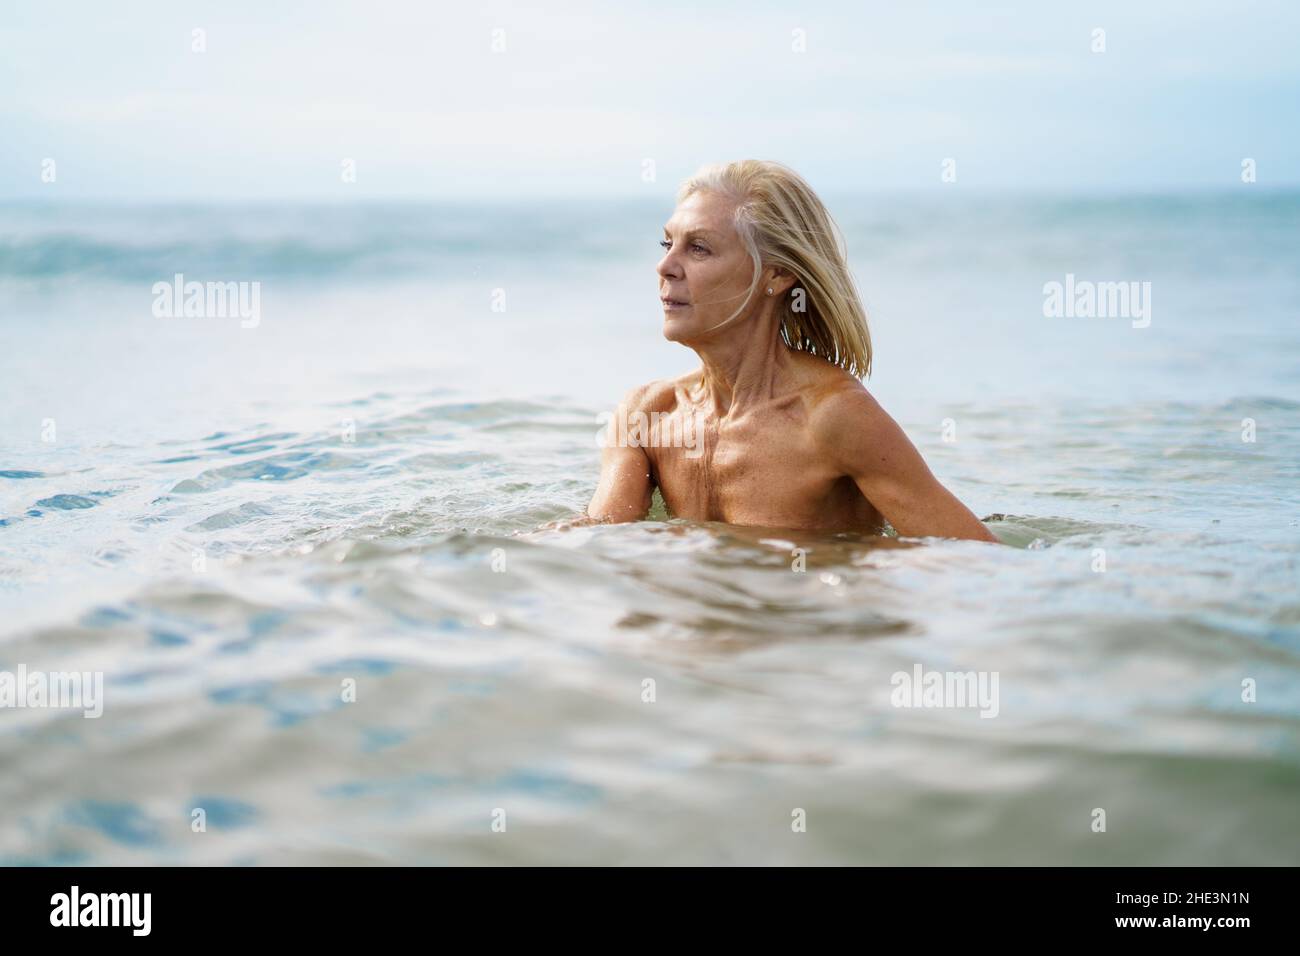 Elderige Frau in gutem Zustand, die im Meer baden. Stockfoto